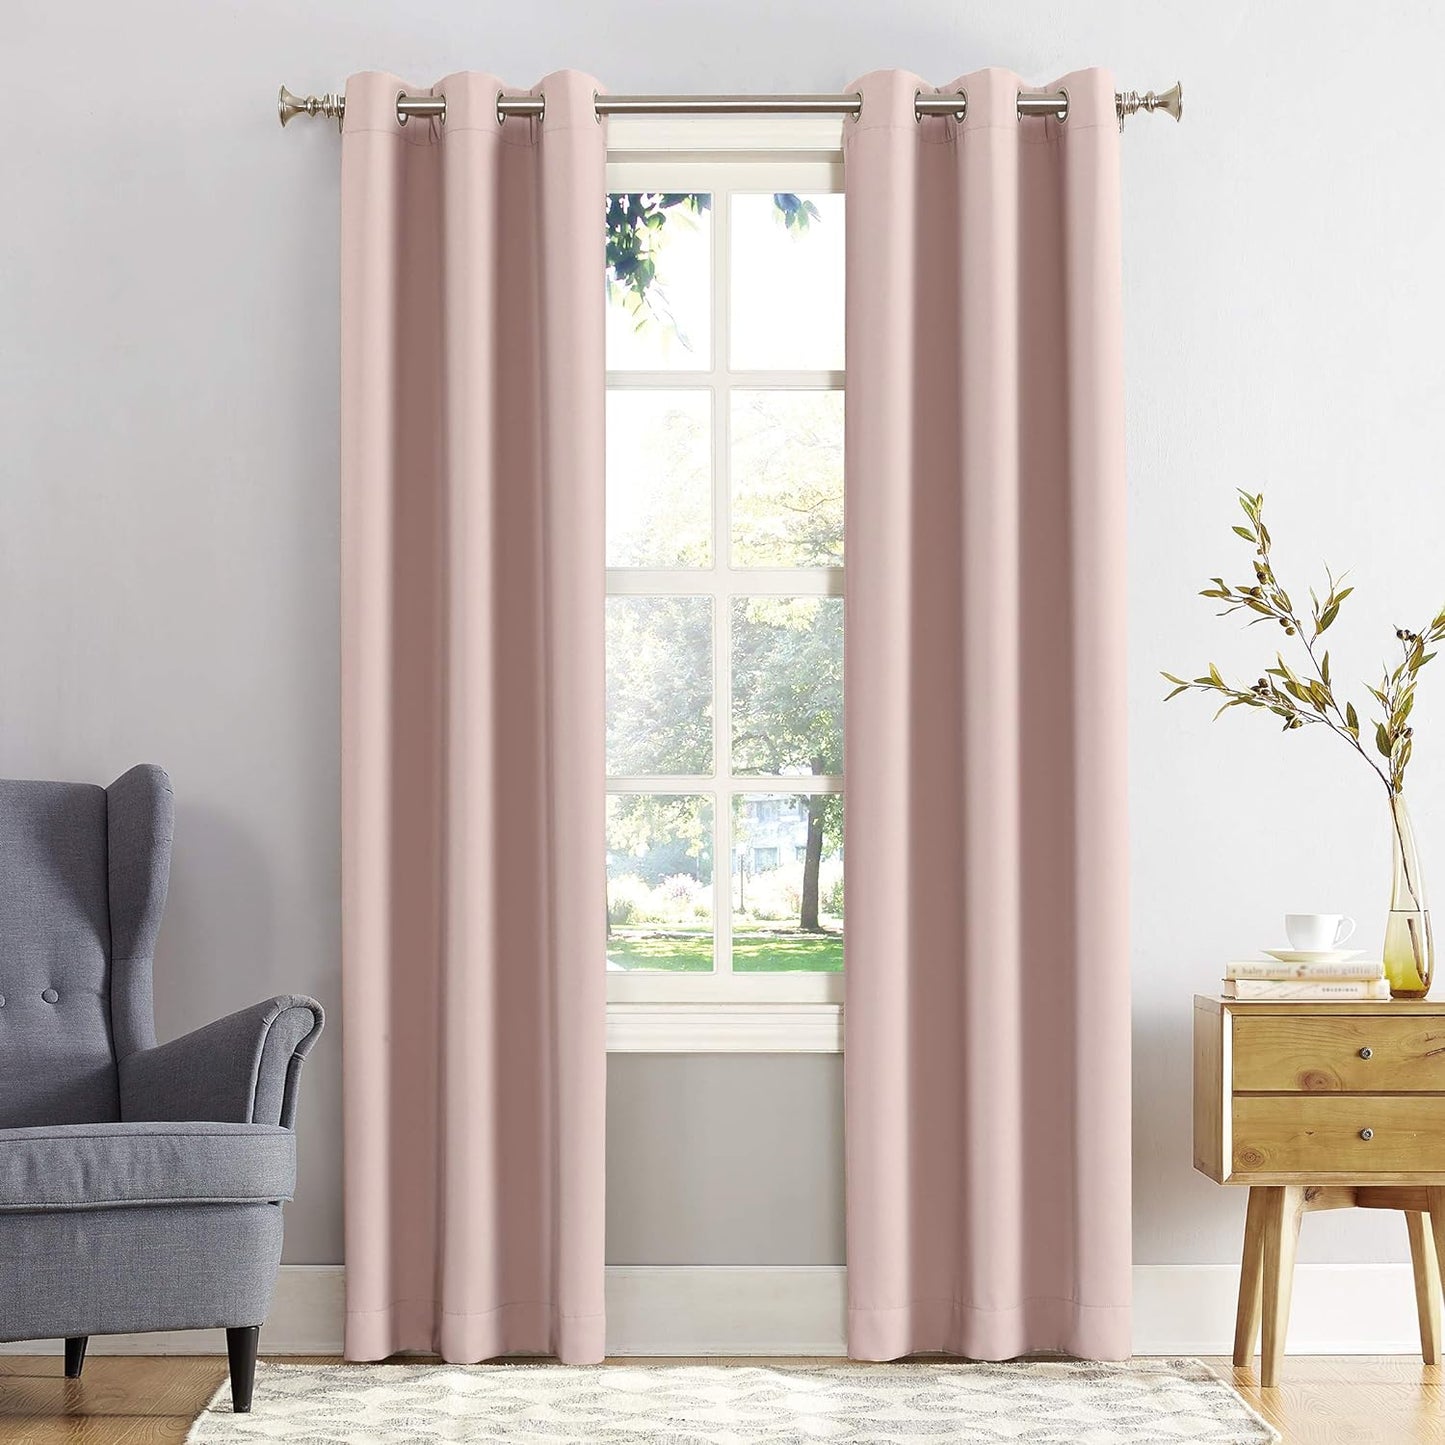 Sun Zero Easton Energy Saving Blackout Grommet Curtain Panel, 40" X 63", Mineral  Sun Zero Blush Pink Curtain Panel 40" X 54"